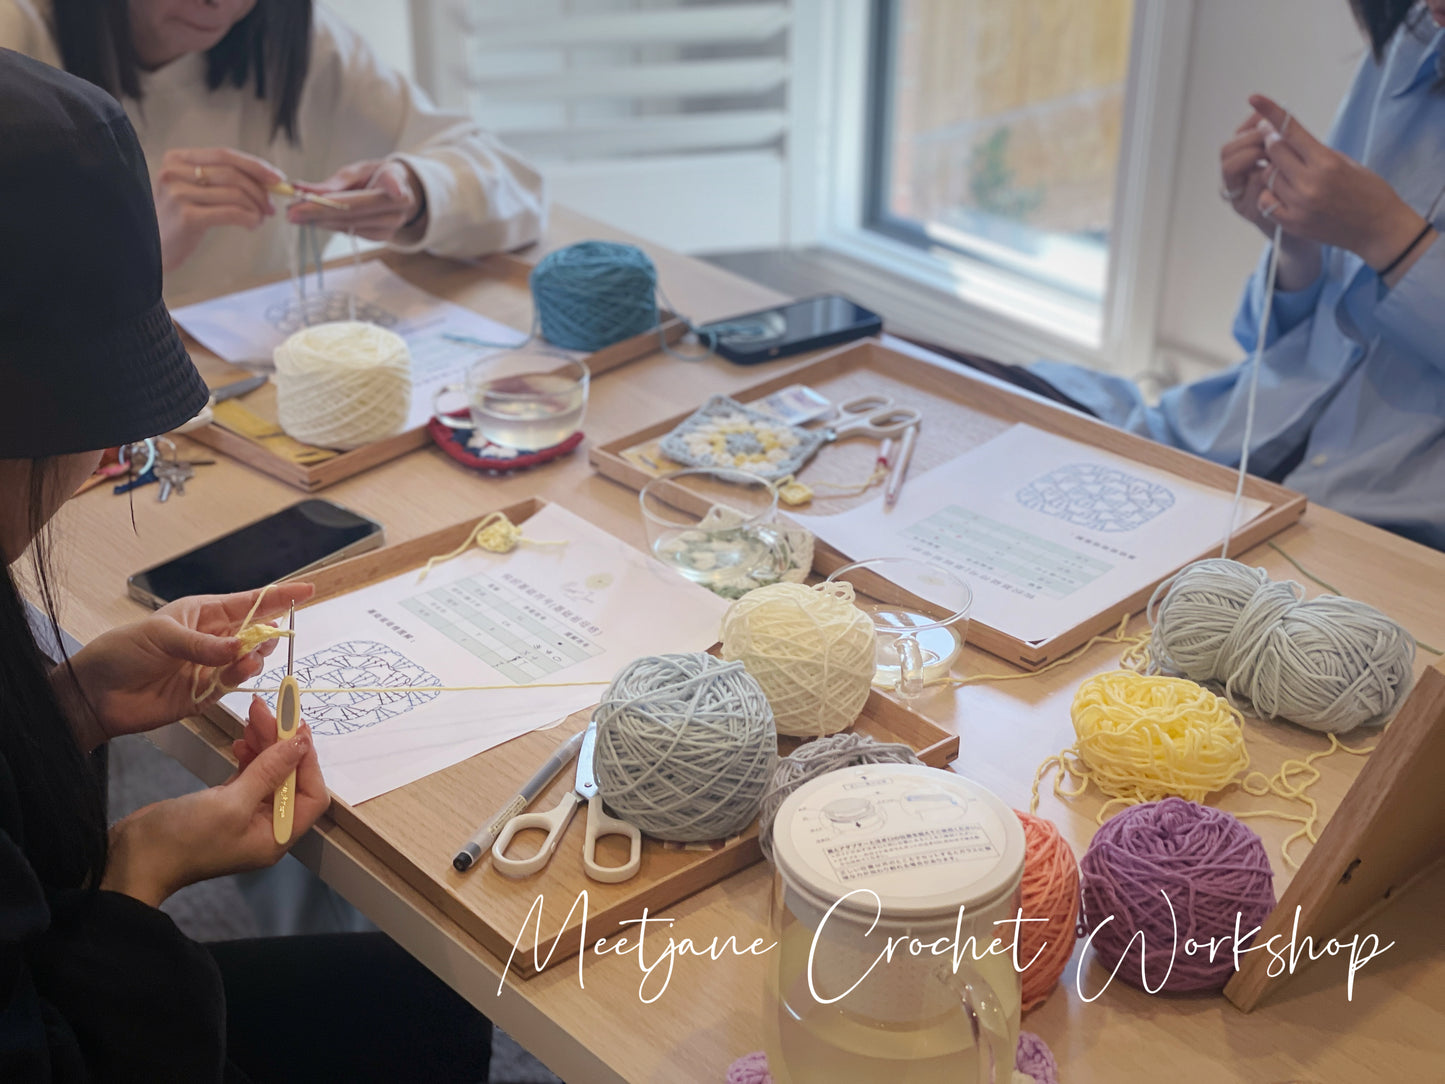 Crochet Workshop|Crochet Maple leaves|Beginner friendly【2 sessions】